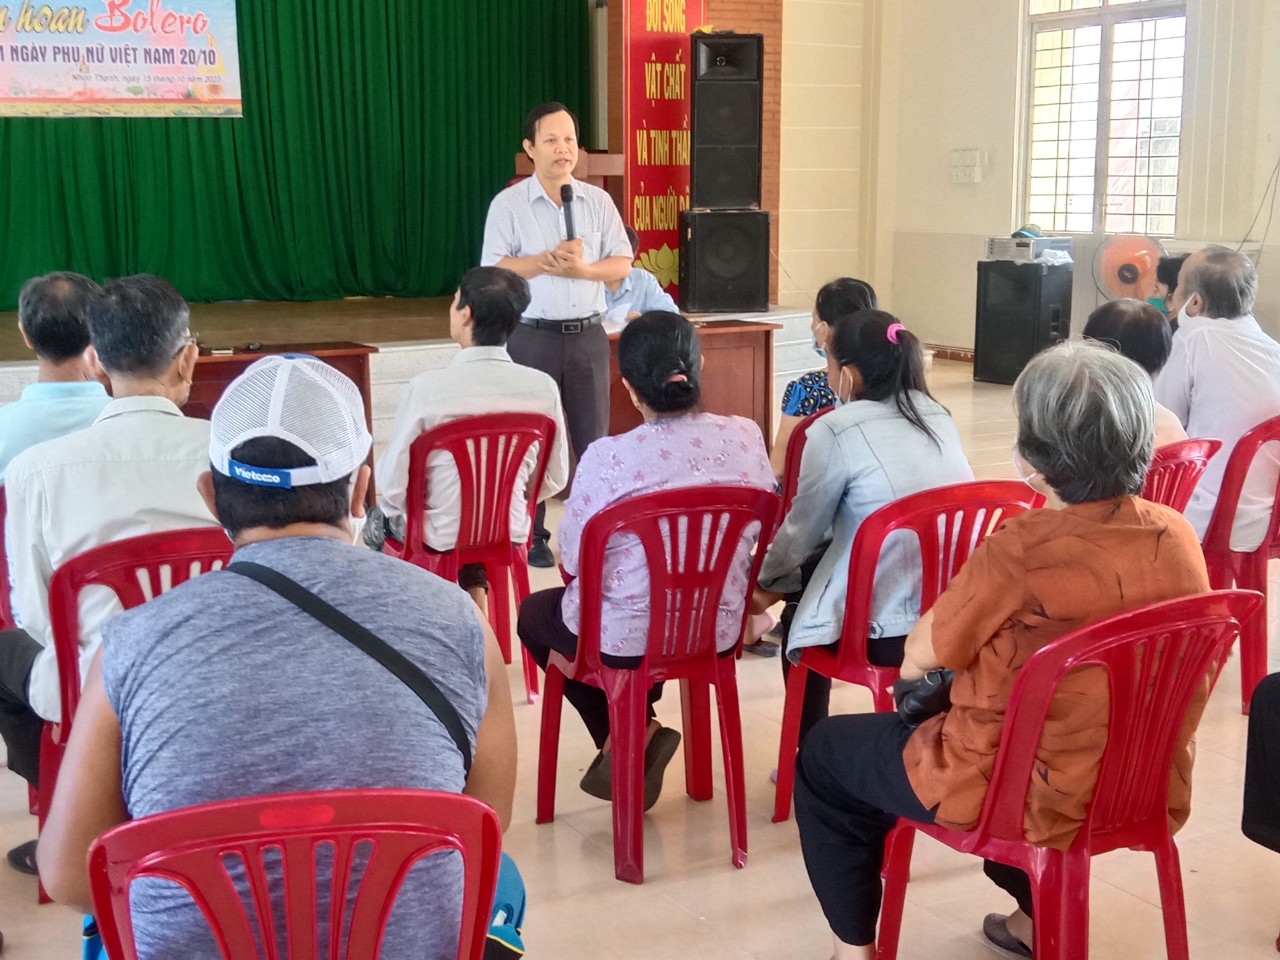 Bác sĩ Nguyễn Văn Dẫn - Trưởng Khoa sức khỏe môi trường y tế trường học (CDC) hướng dẫn tại lớp tập huấn.